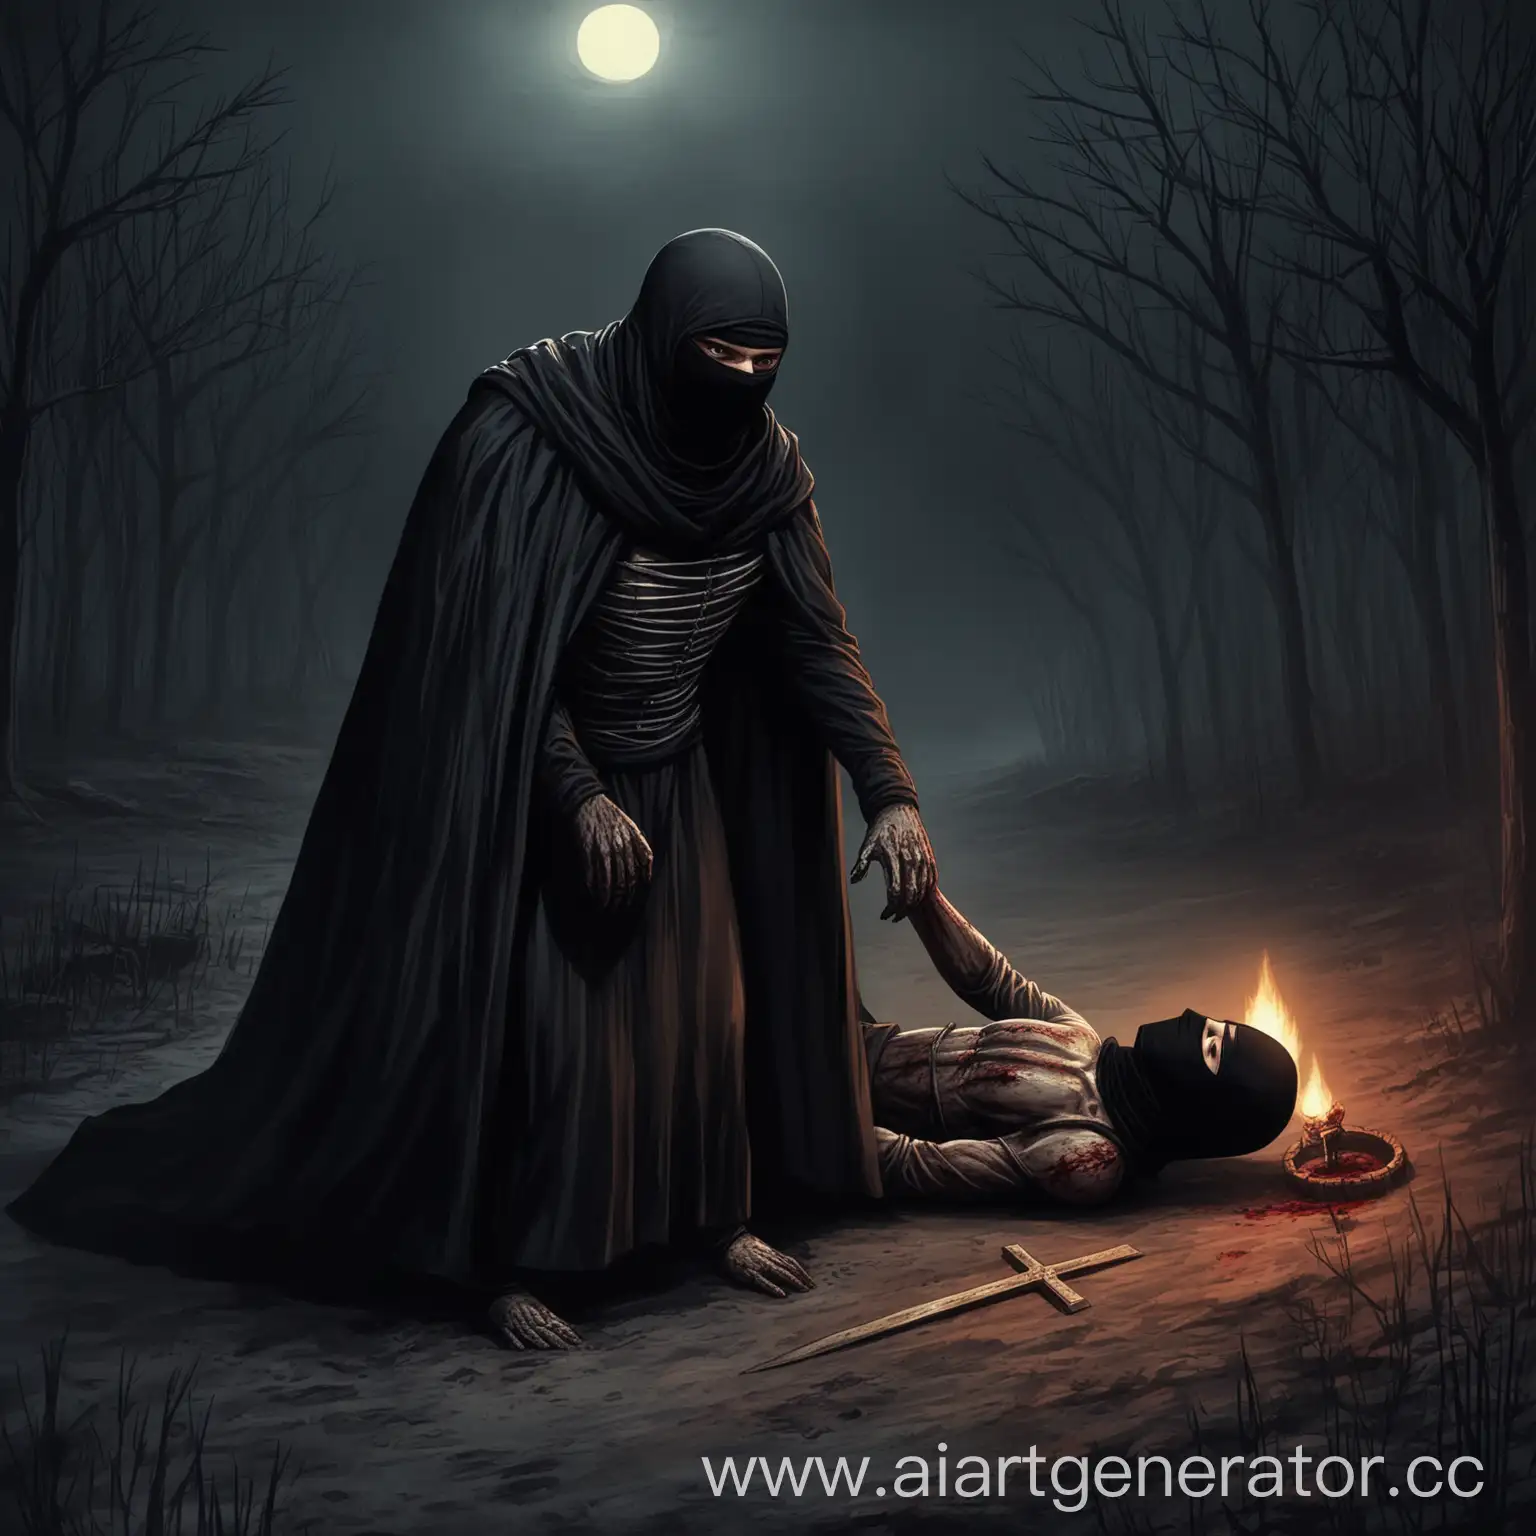 сталкер Кхорнит одетый в черный плащ и балаклаве,  приносит в жертву человека темной ночью 